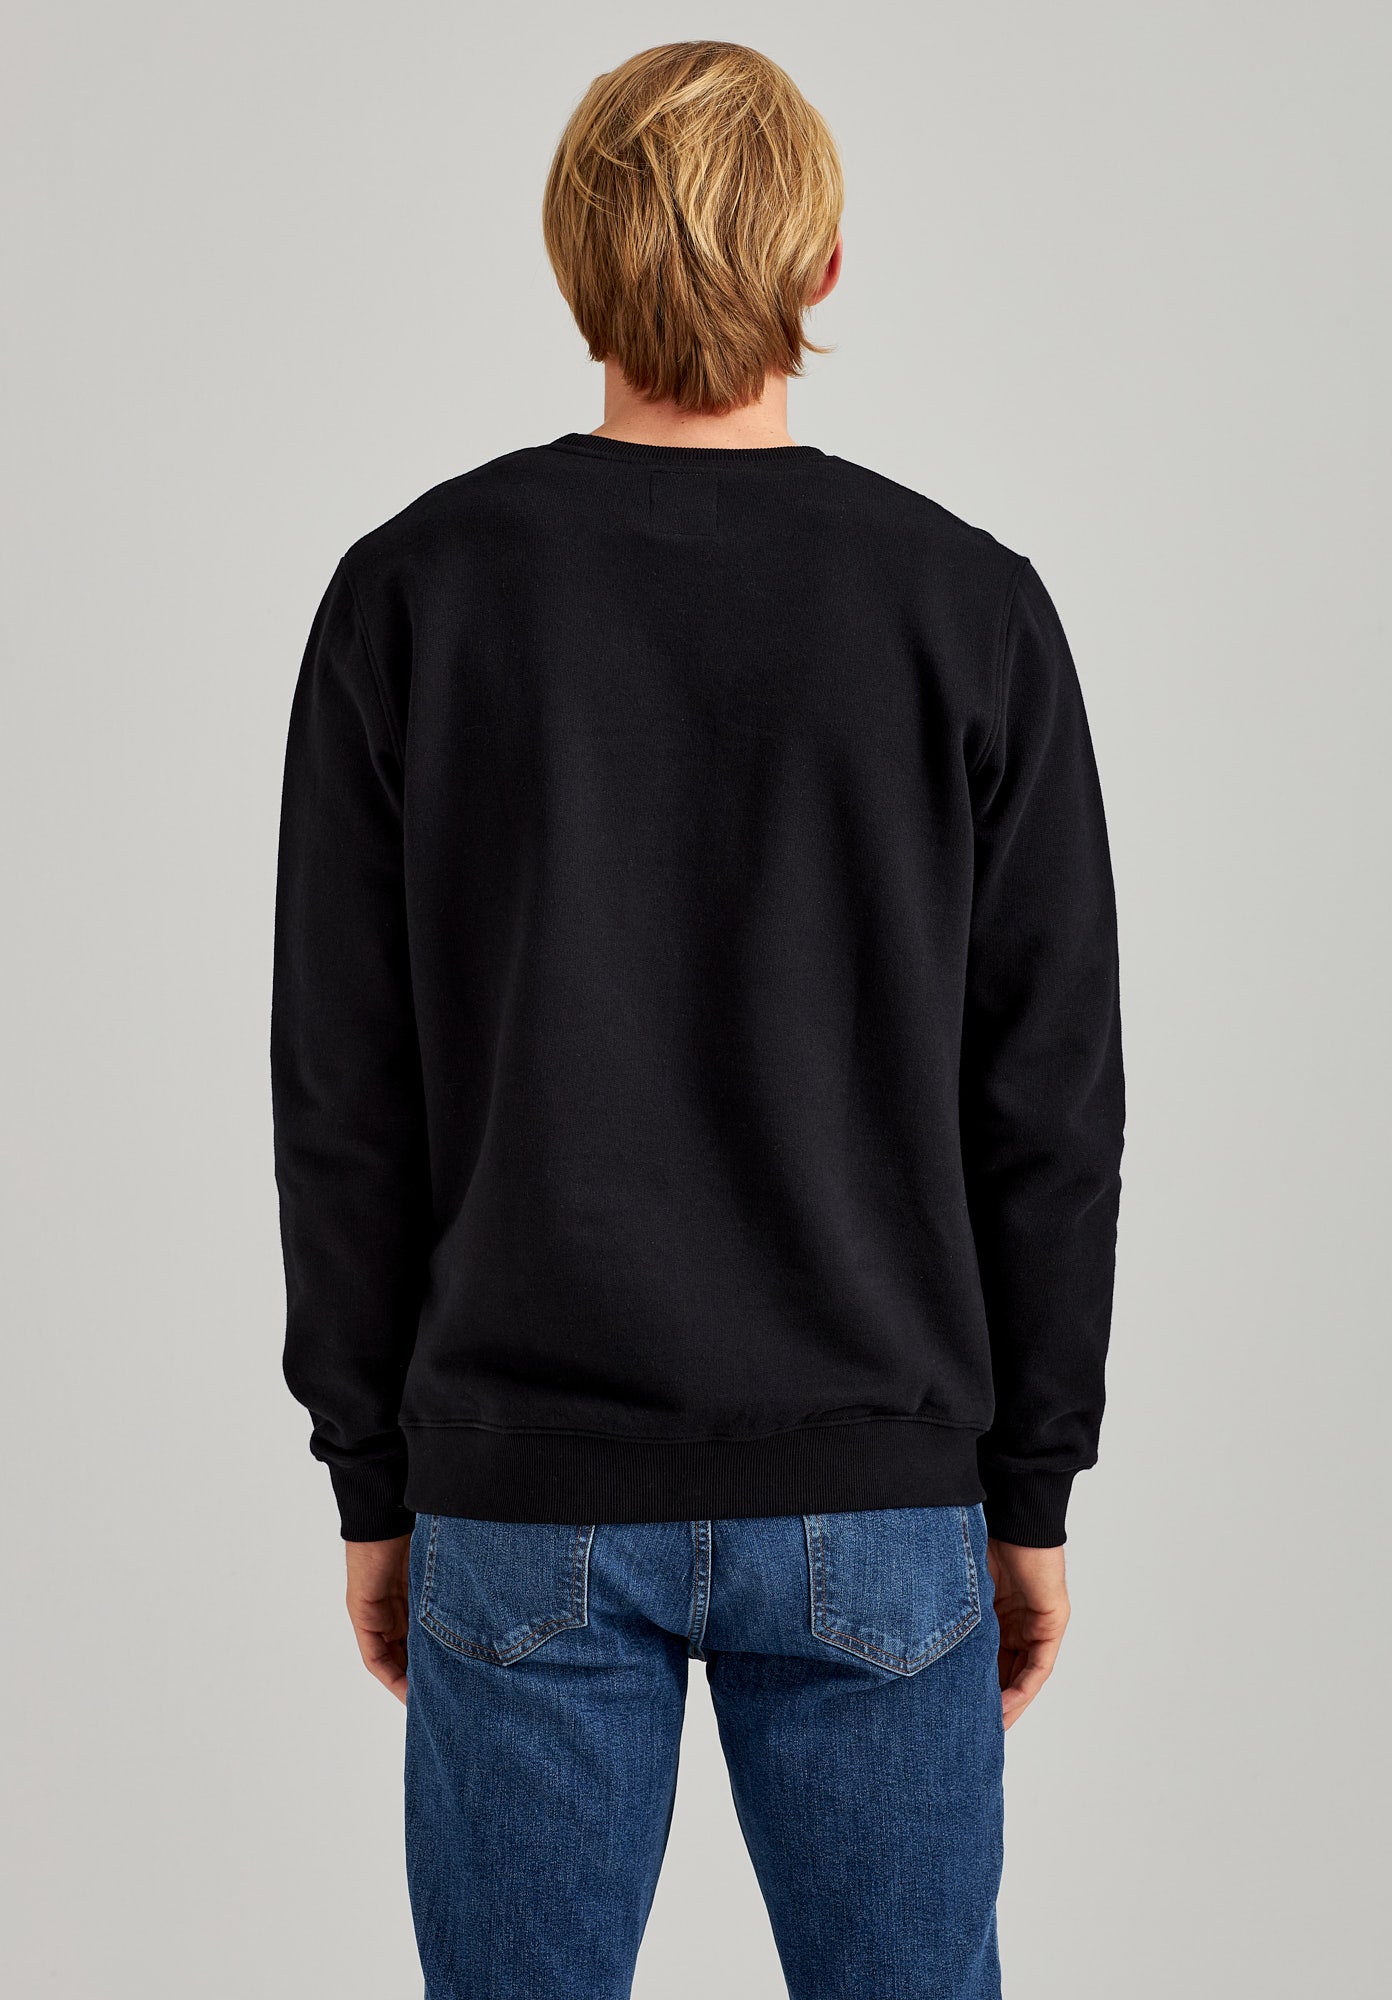 TT1029 Sweater (GOTS)